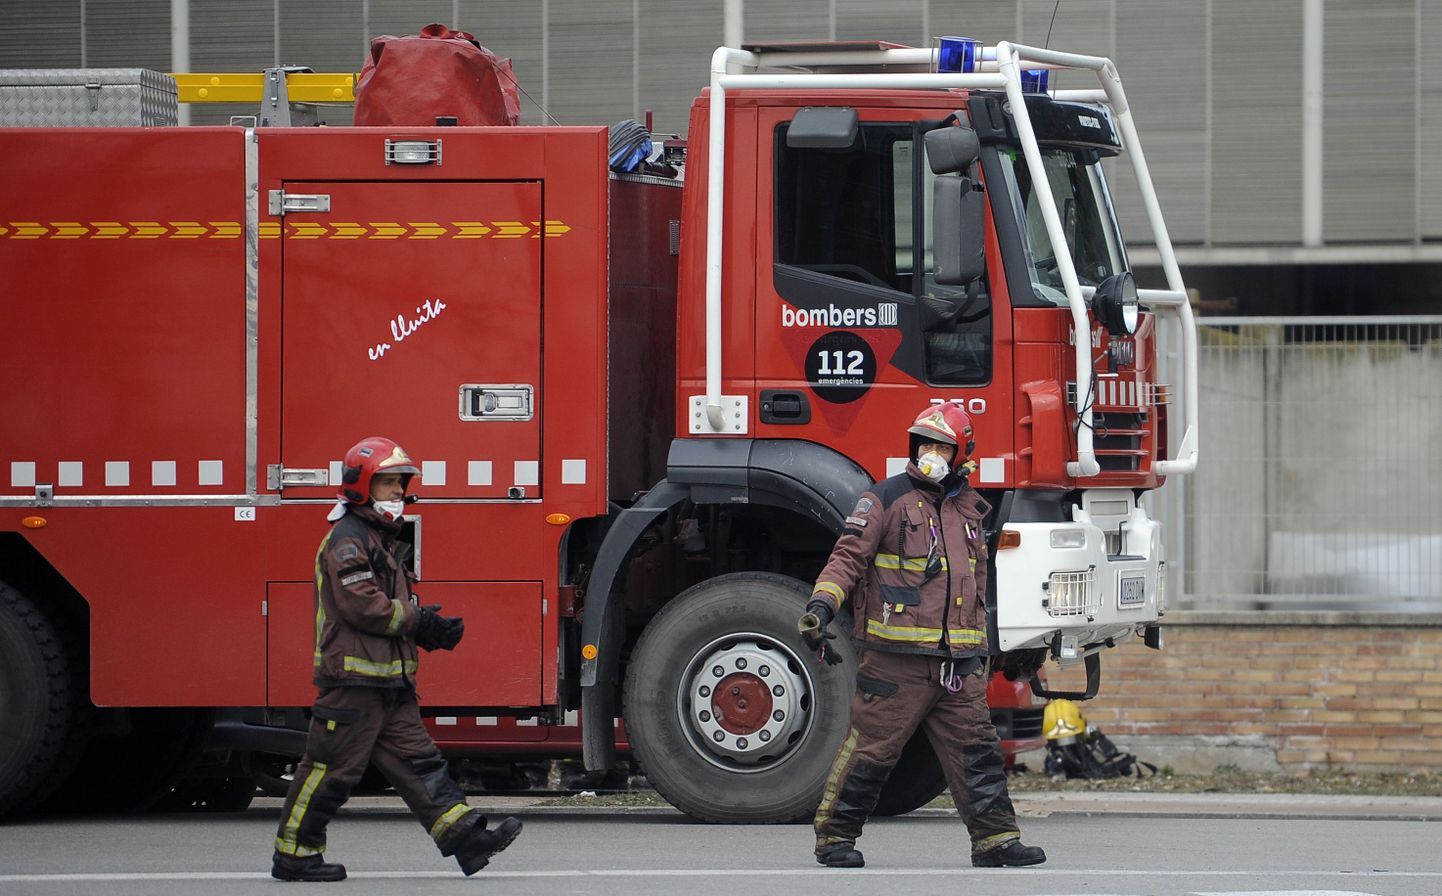 Hispaania tuletõrjujad 2015. aasta veebruari keemiakombinaadi plahvatuse sündmuskohas.